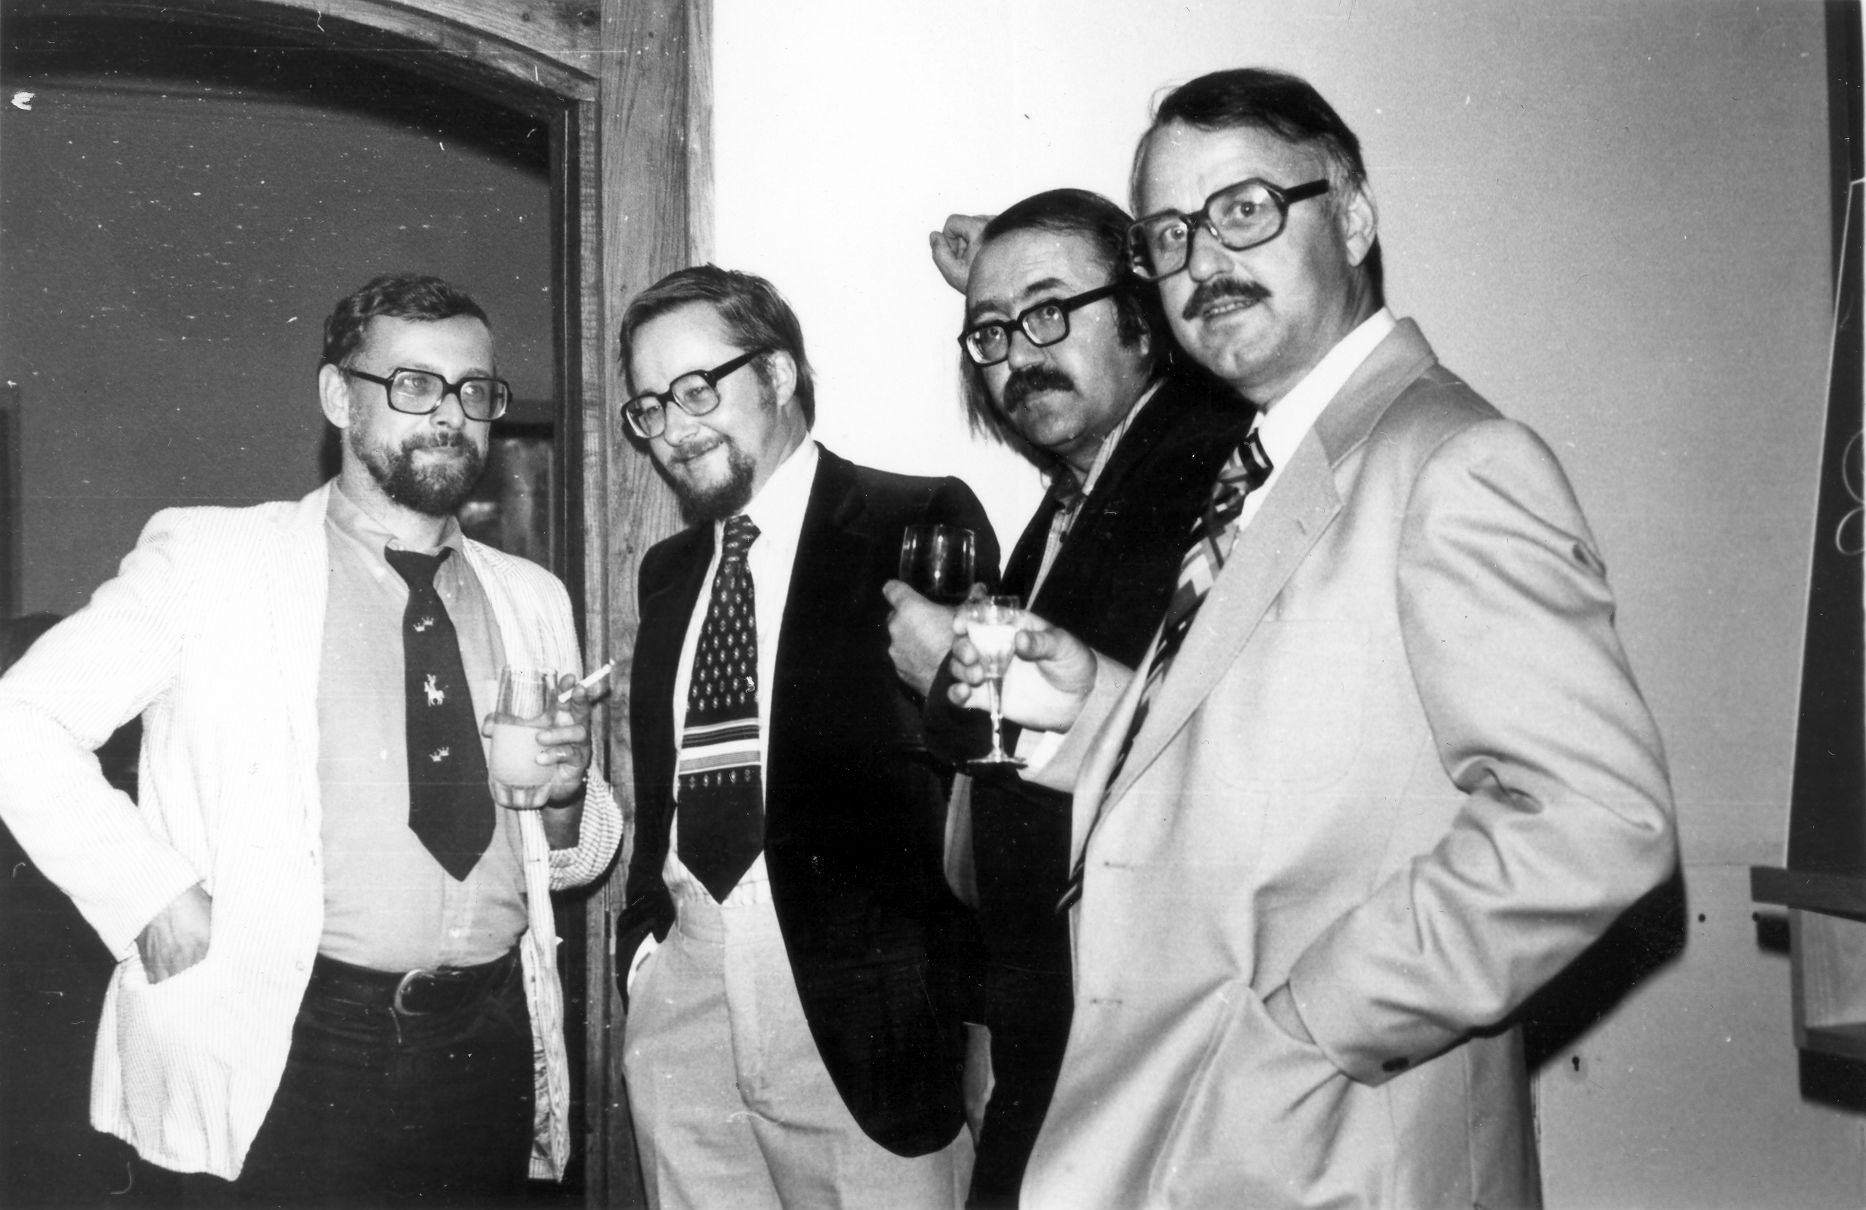 Photo from Droba’s festival in Luslawice (Poland) in 1980. From left to right: Krzysztof Droba, Vytautas Landsbergis, Donatas Katkus, Bronius Kutavičius.